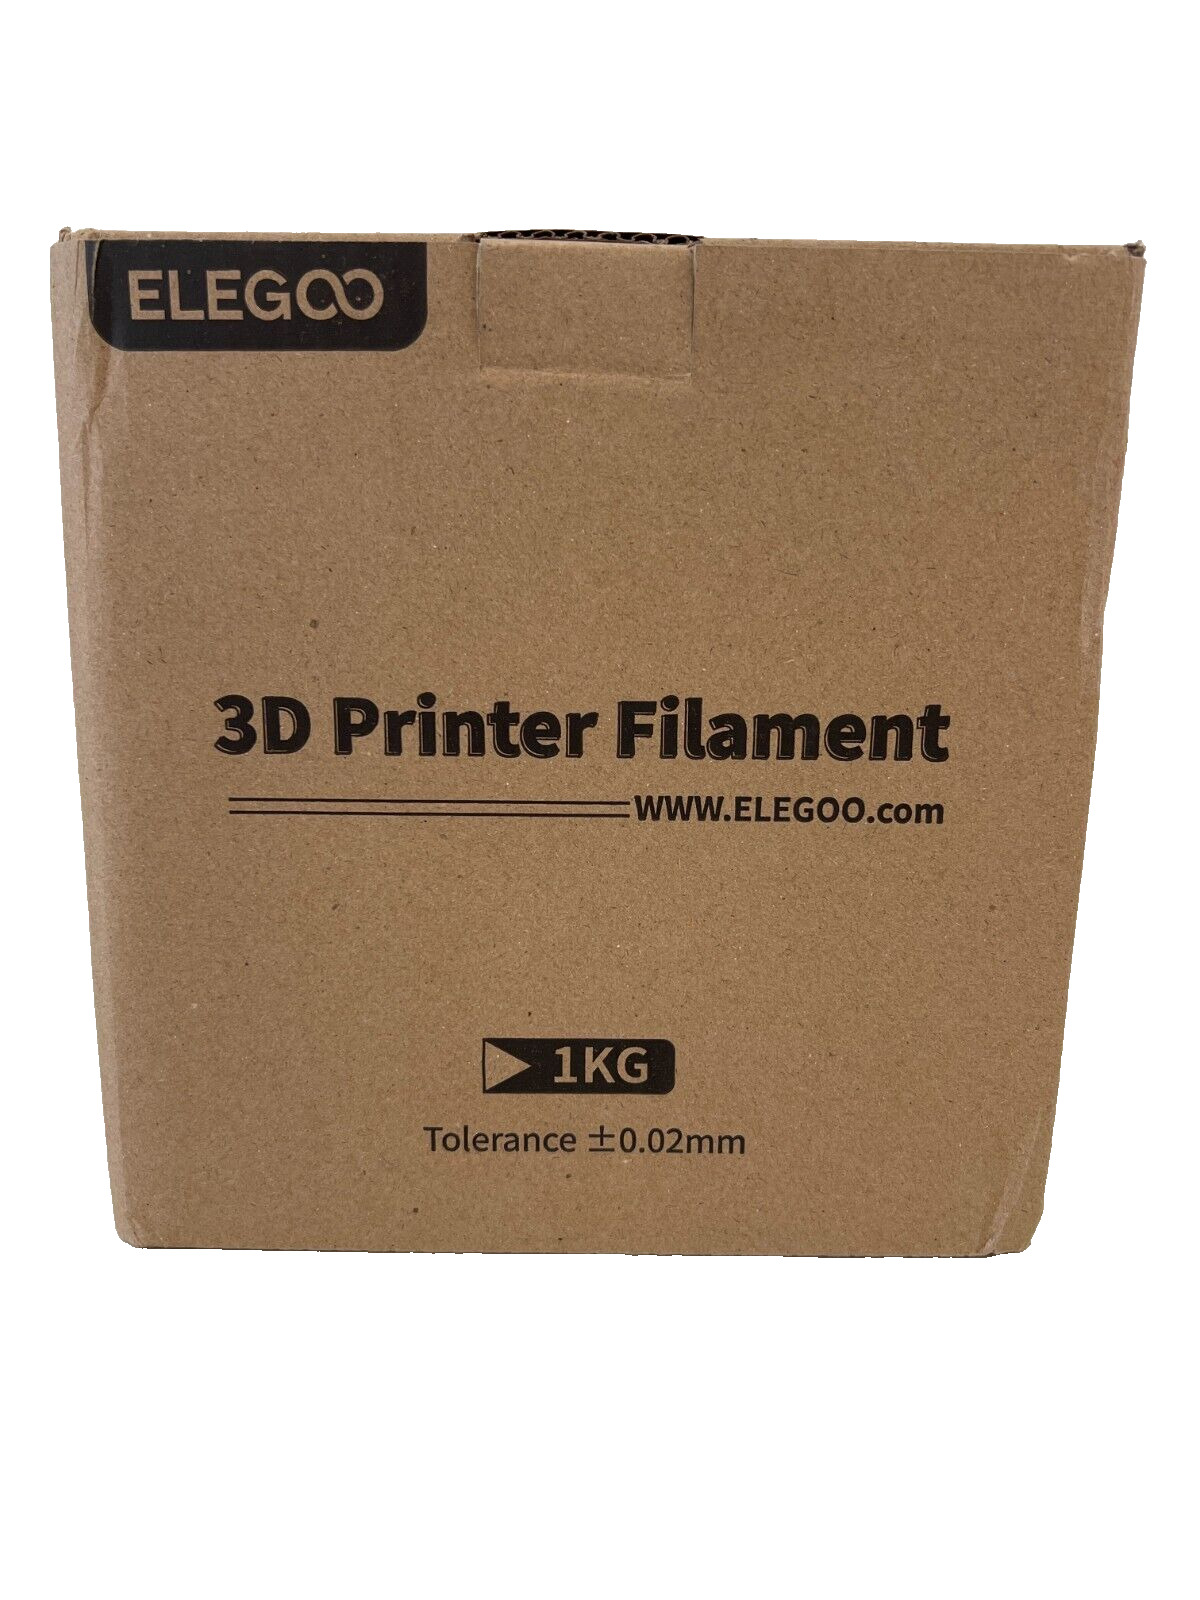 ELEGOO Rapid PLA+ 3D Printer Material Filament 1KG Pink